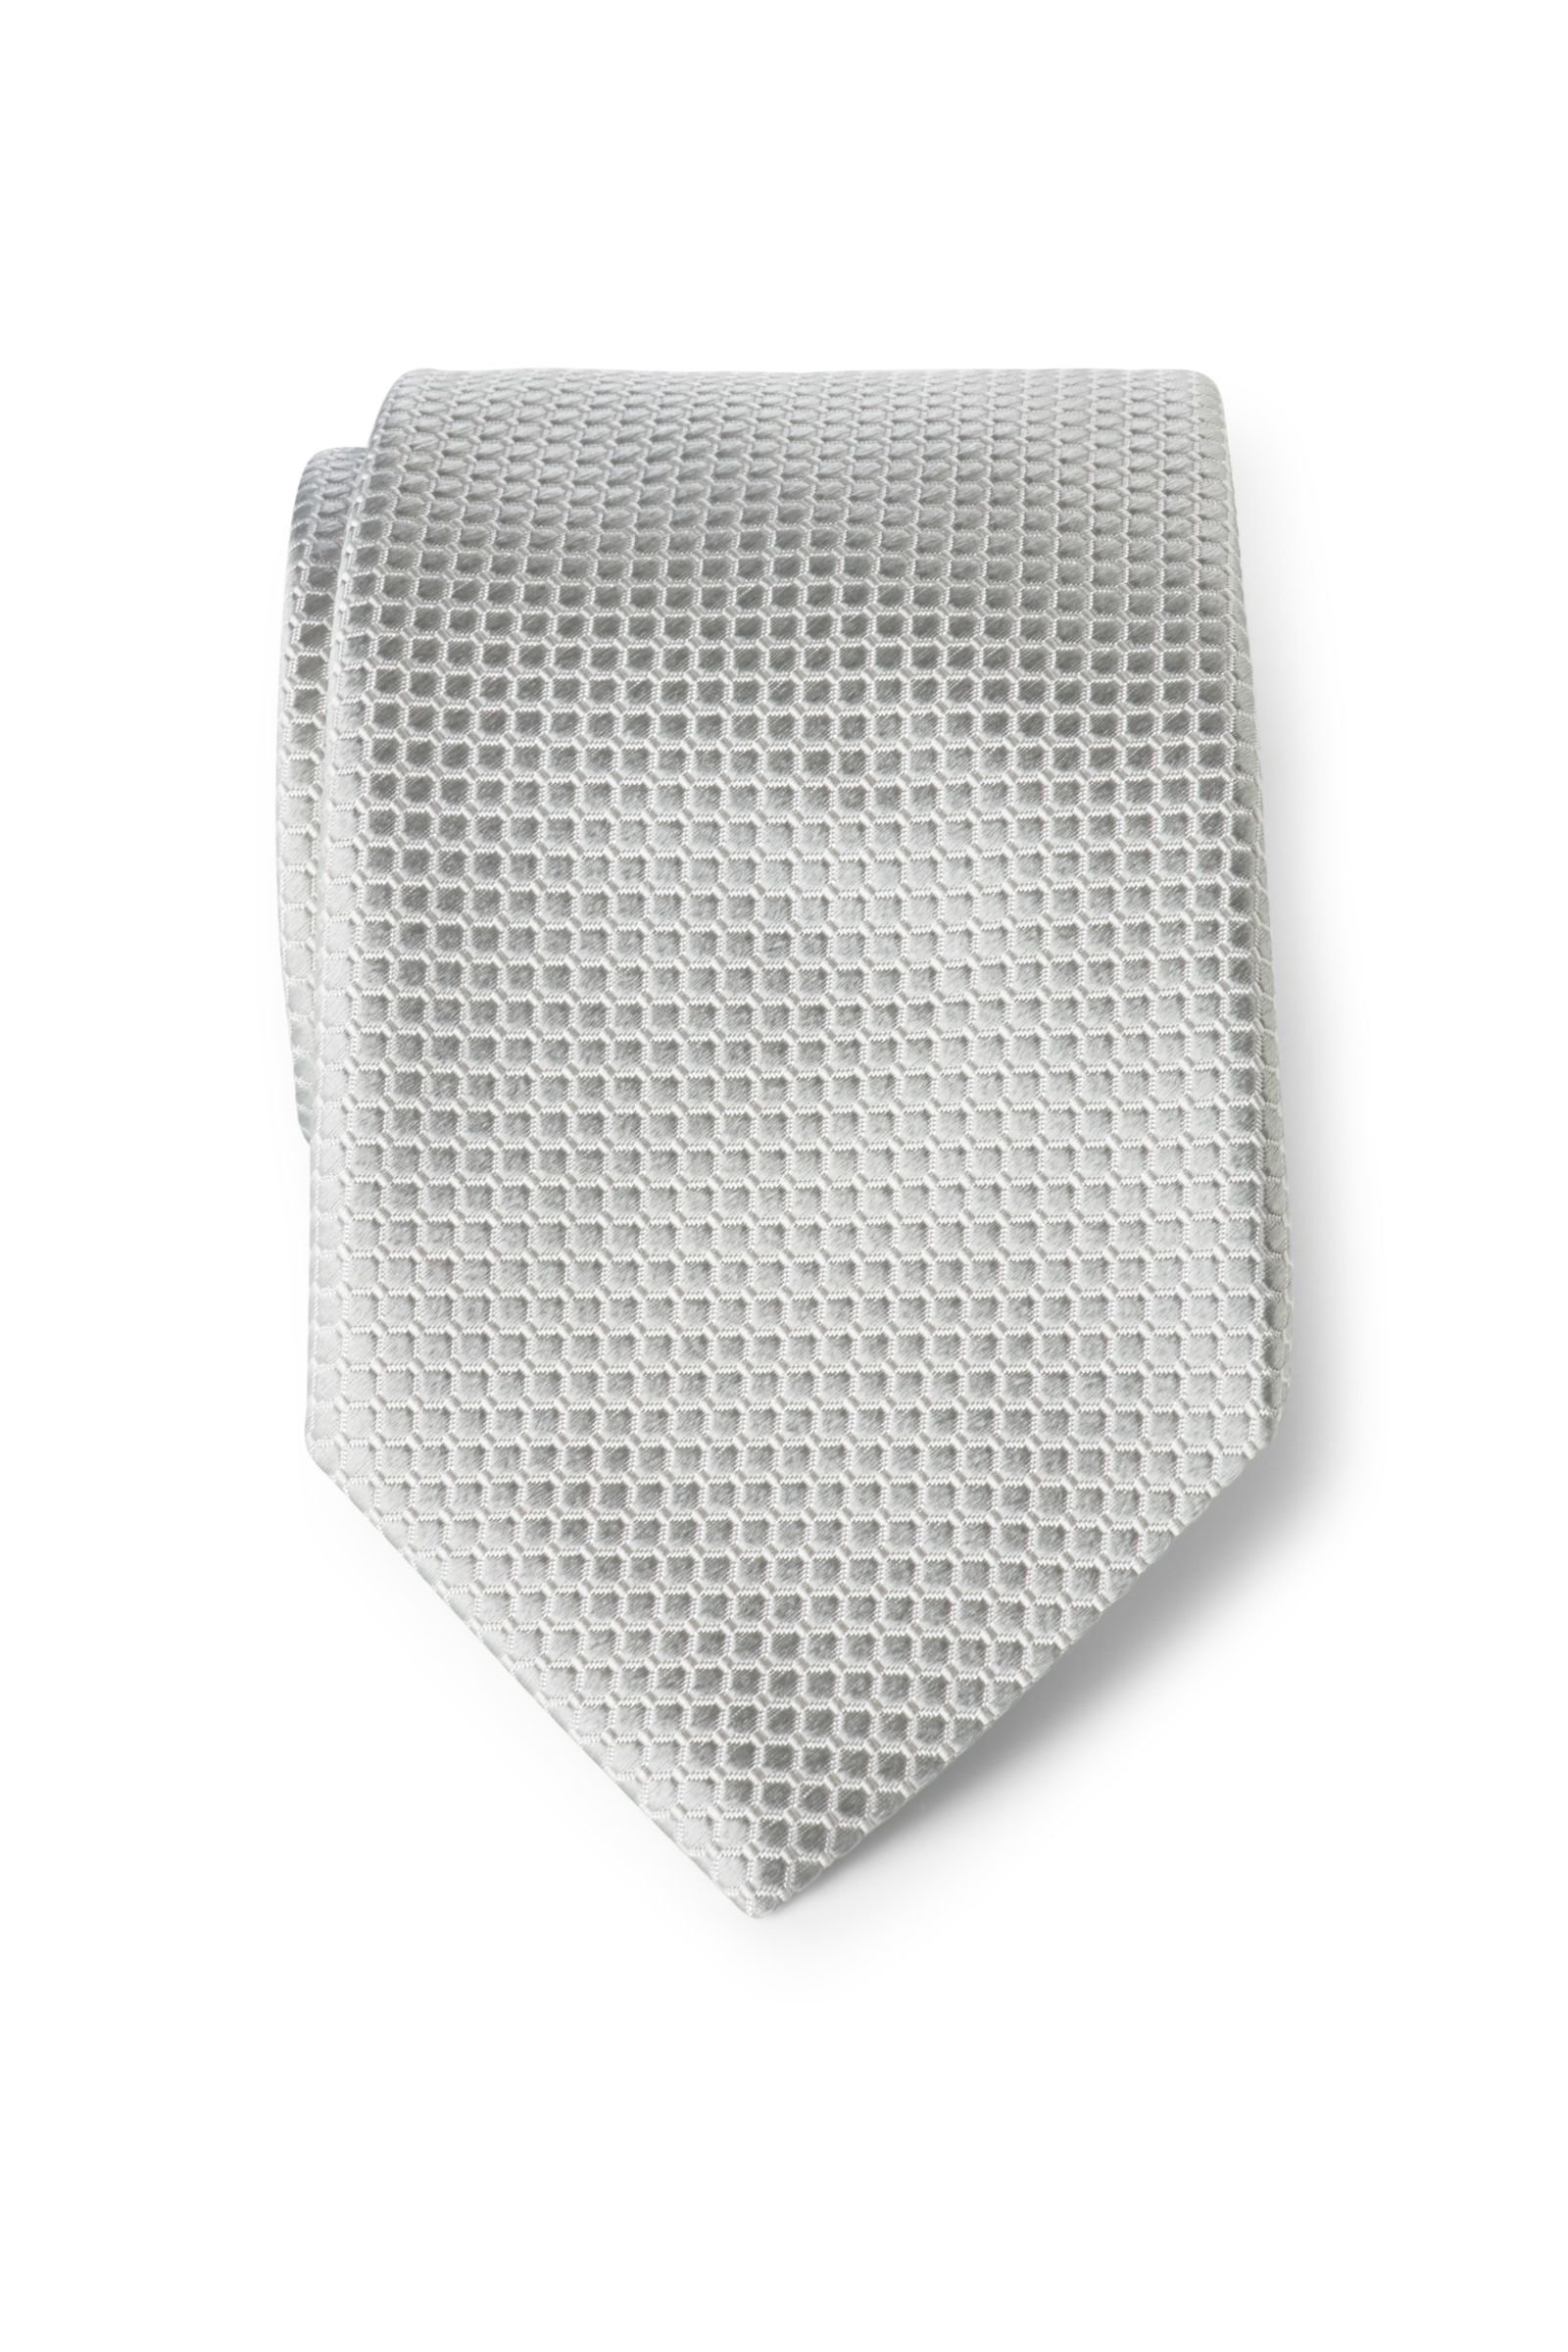 Silk tie silver-grey